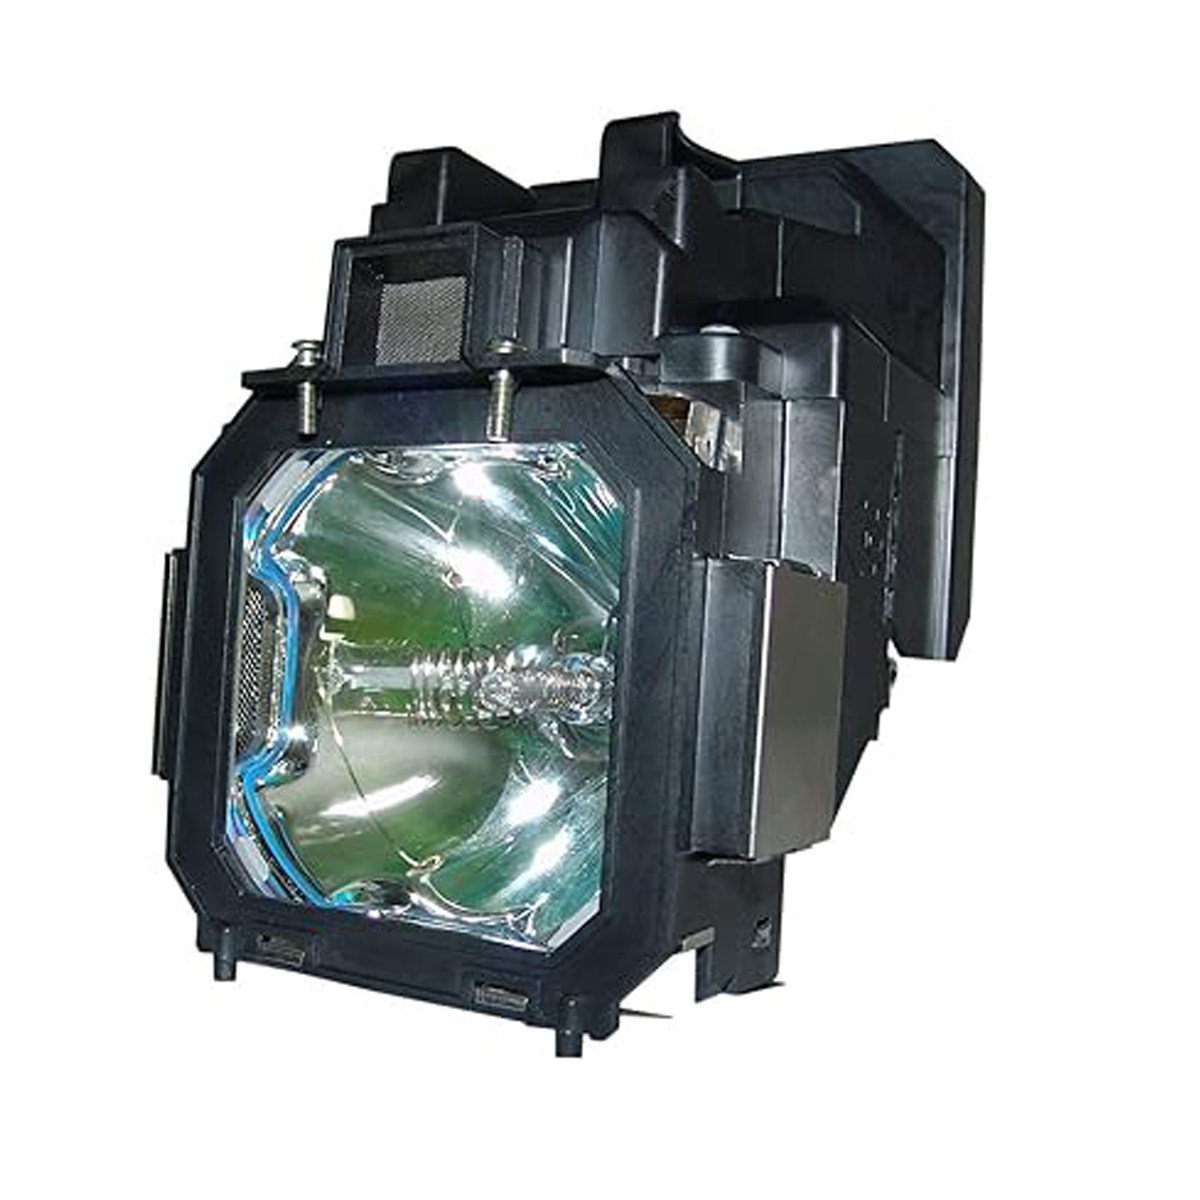 Replacement Projector lamp POA-LMP105 For Sanyo PLC-XT20 PL C-XT21 PLC-XT25